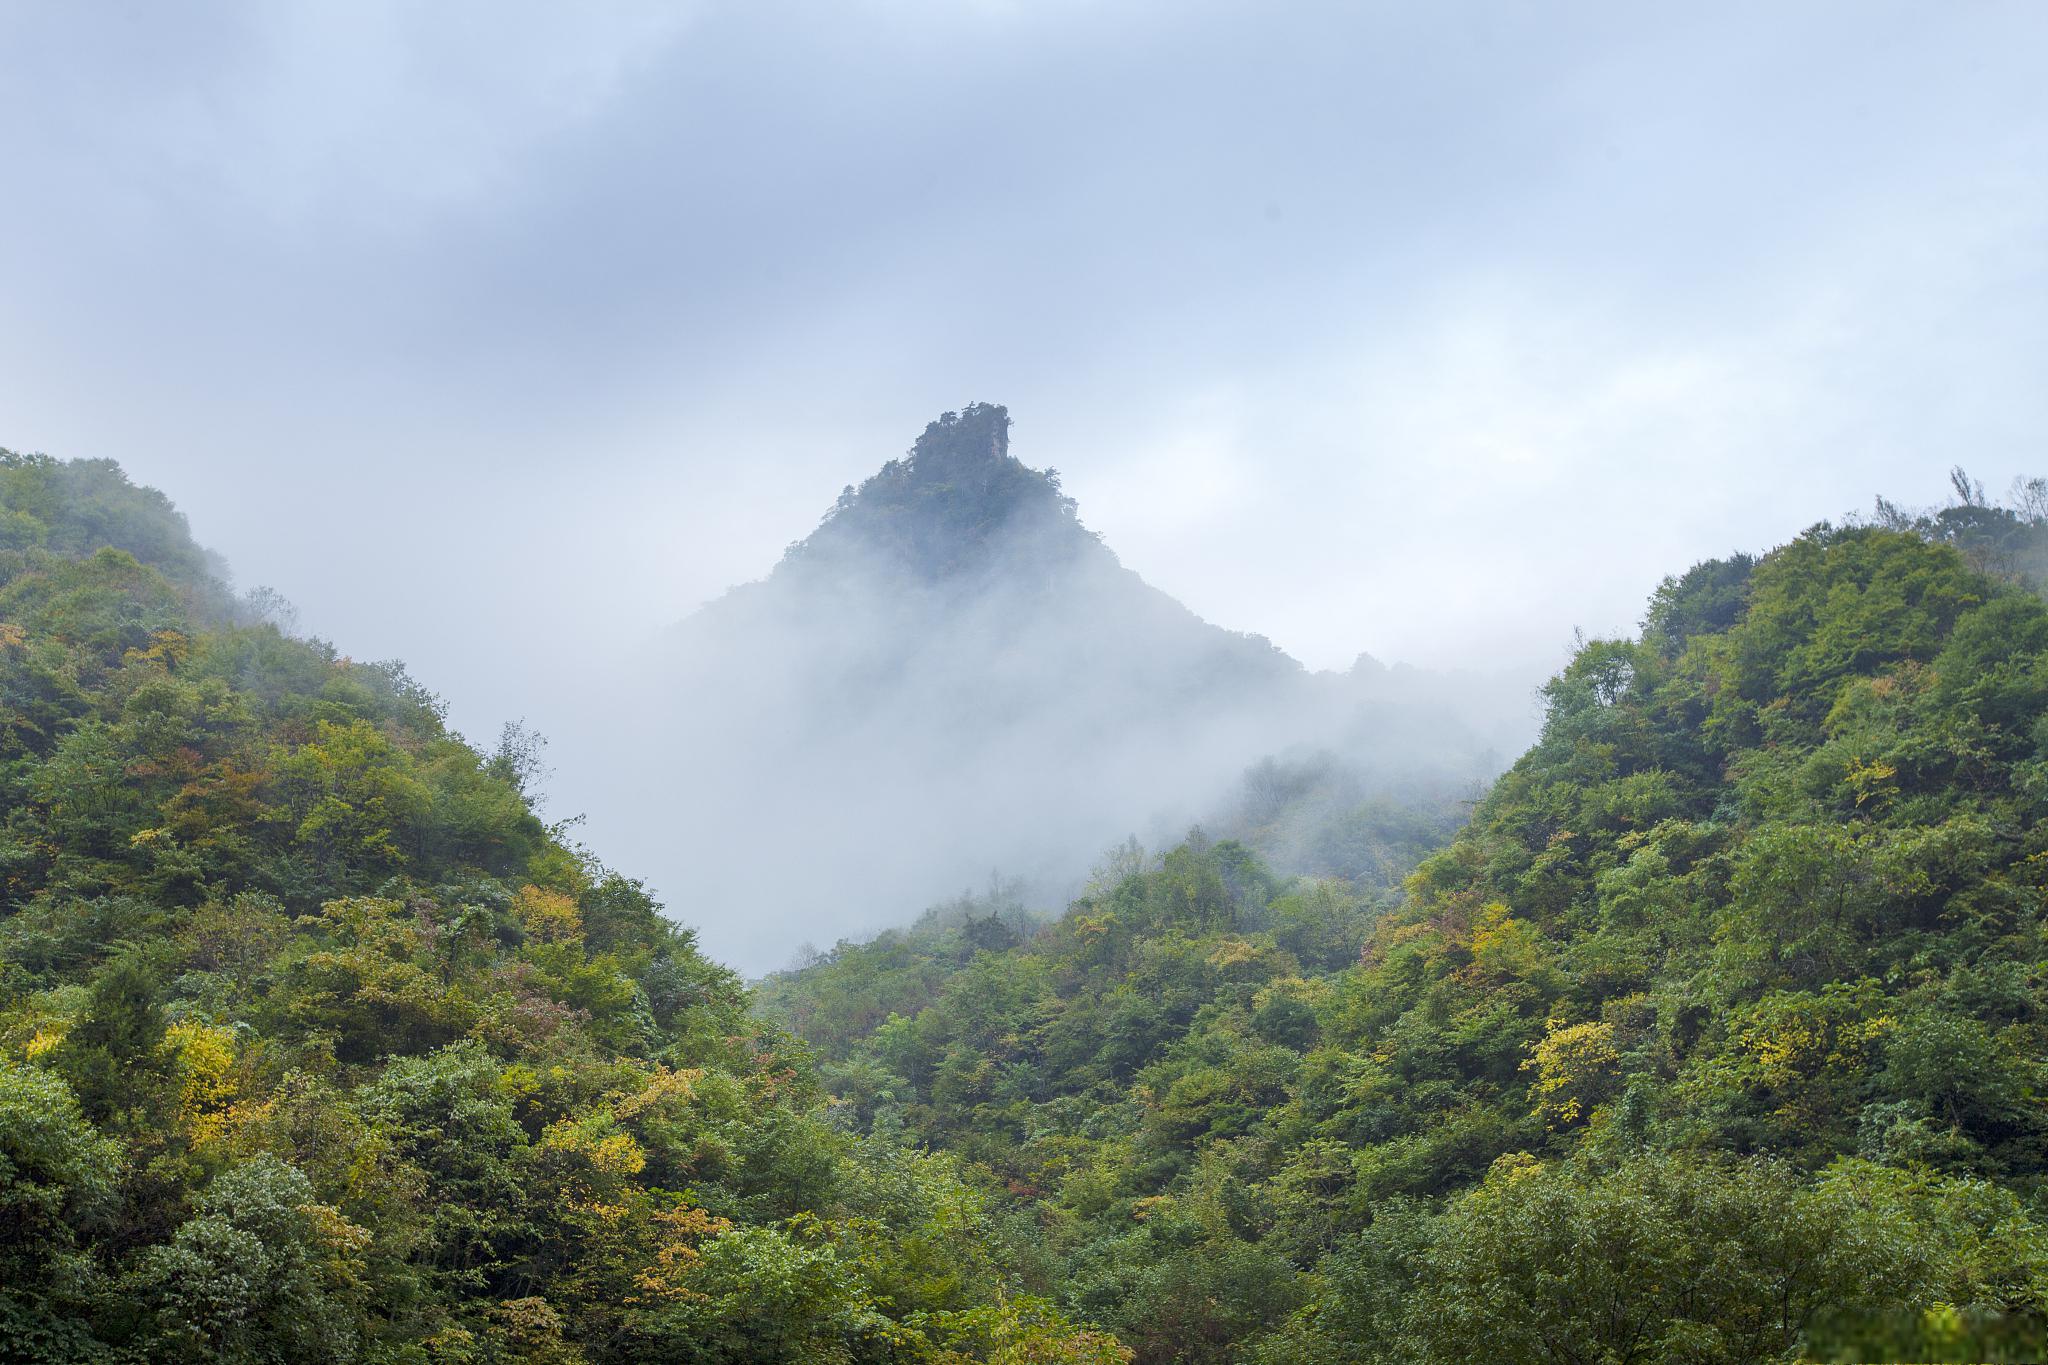 神龙架游玩攻略 神龙架是一个广袤而神秘的地方,位于中国湖北省的西北